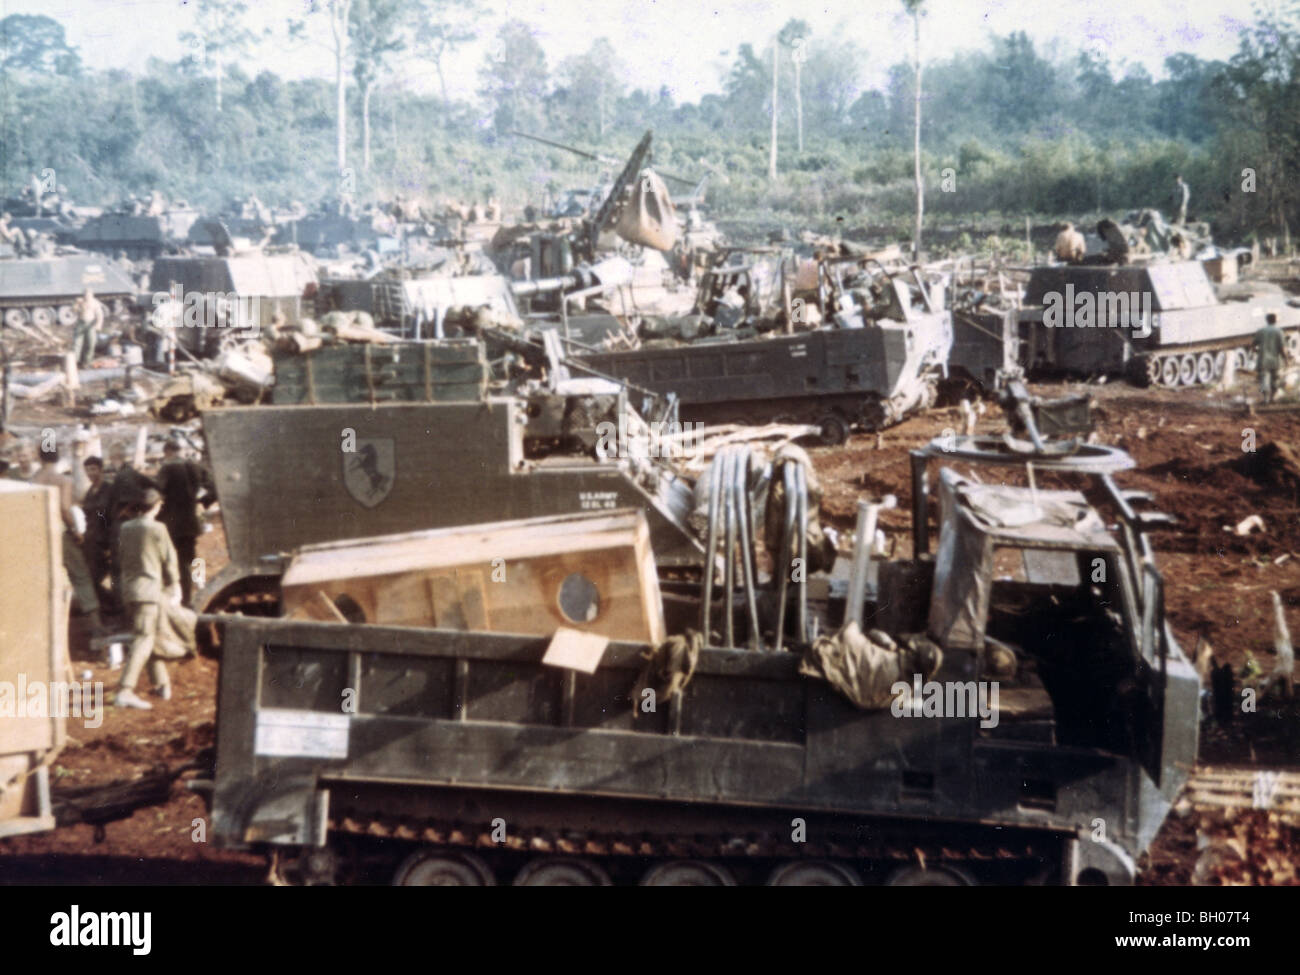 Männer und Fahrzeuge von Troop "E", 11th Armored Cavalry Regiment, richten Sie eine Nacht defensive Position während der 1970 Invasion von Kambodscha. Stockfoto